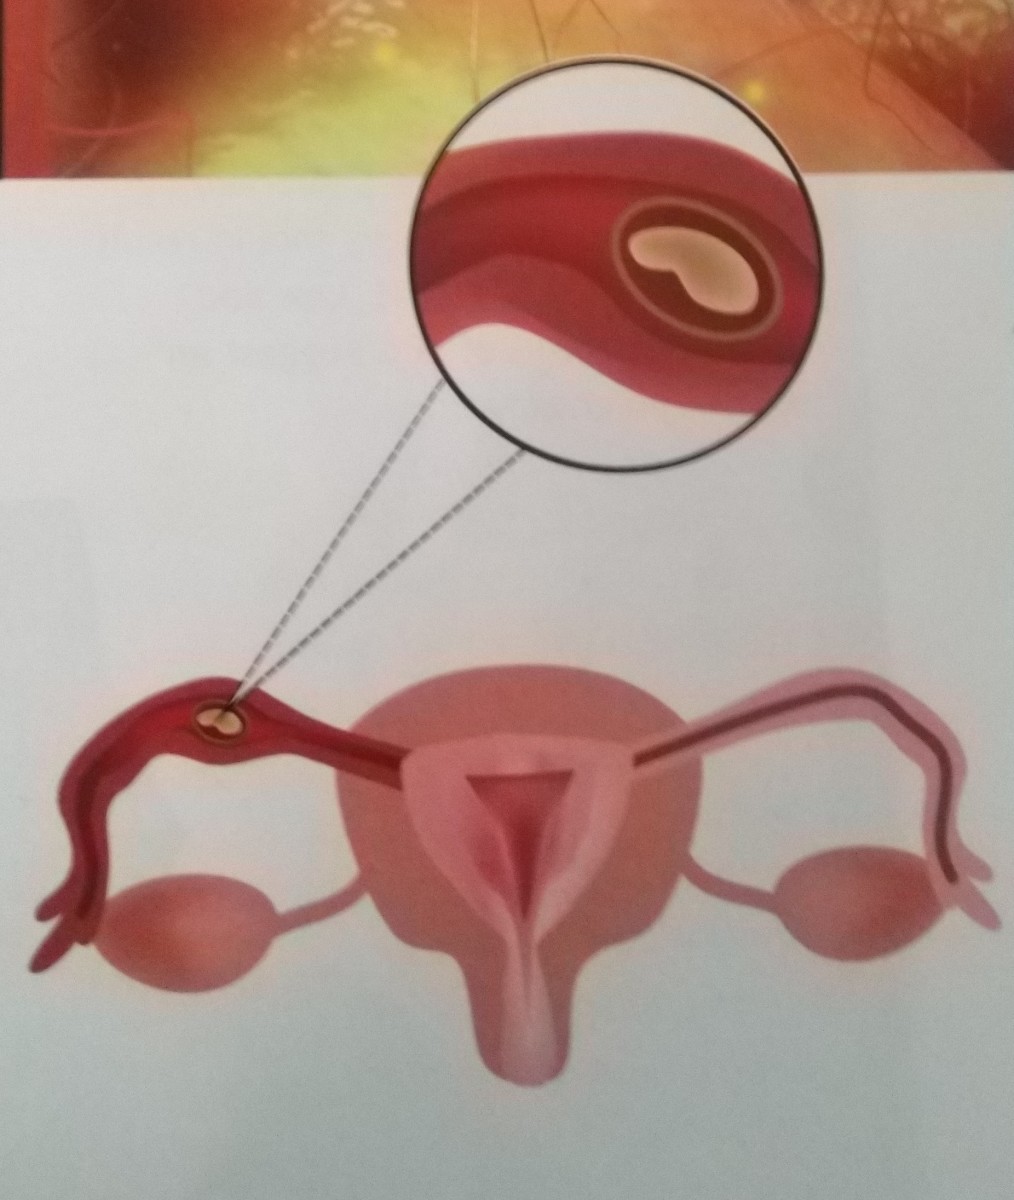 Embryo implanted in fallopian tube